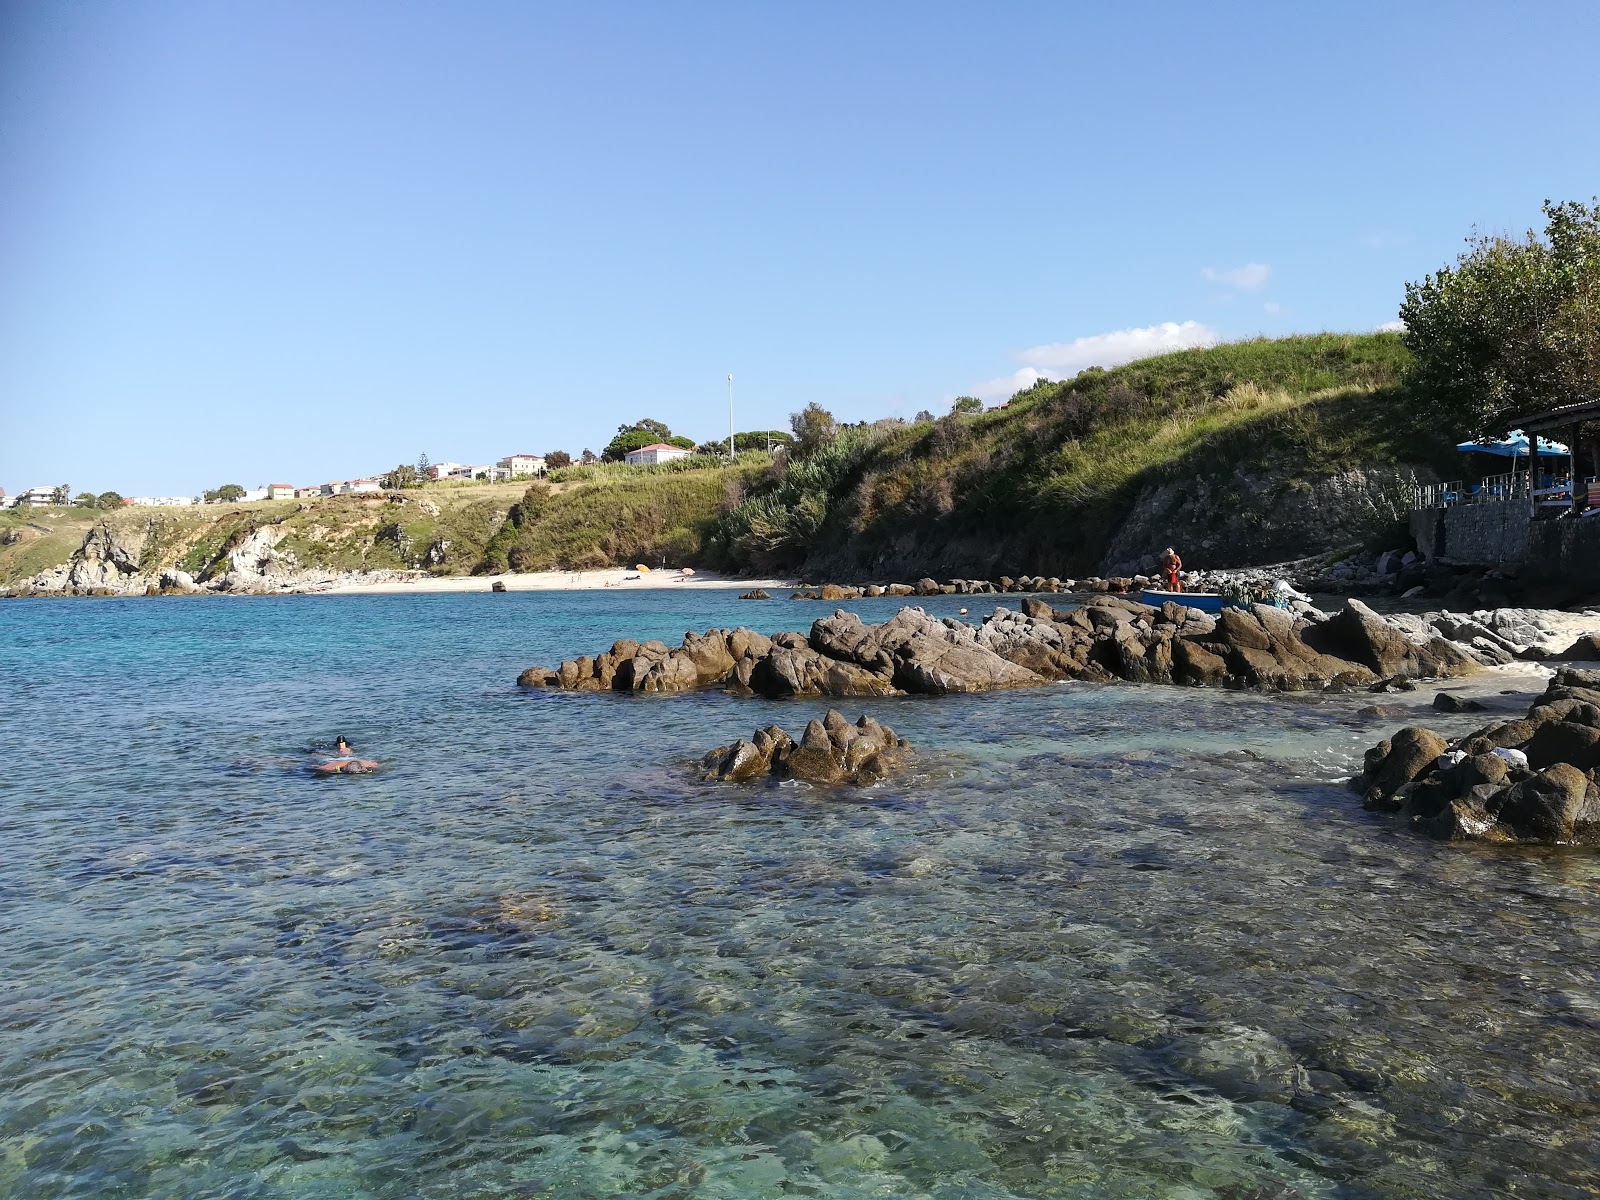 Scoglio la Vrace beach'in fotoğrafı mavi sular yüzey ile